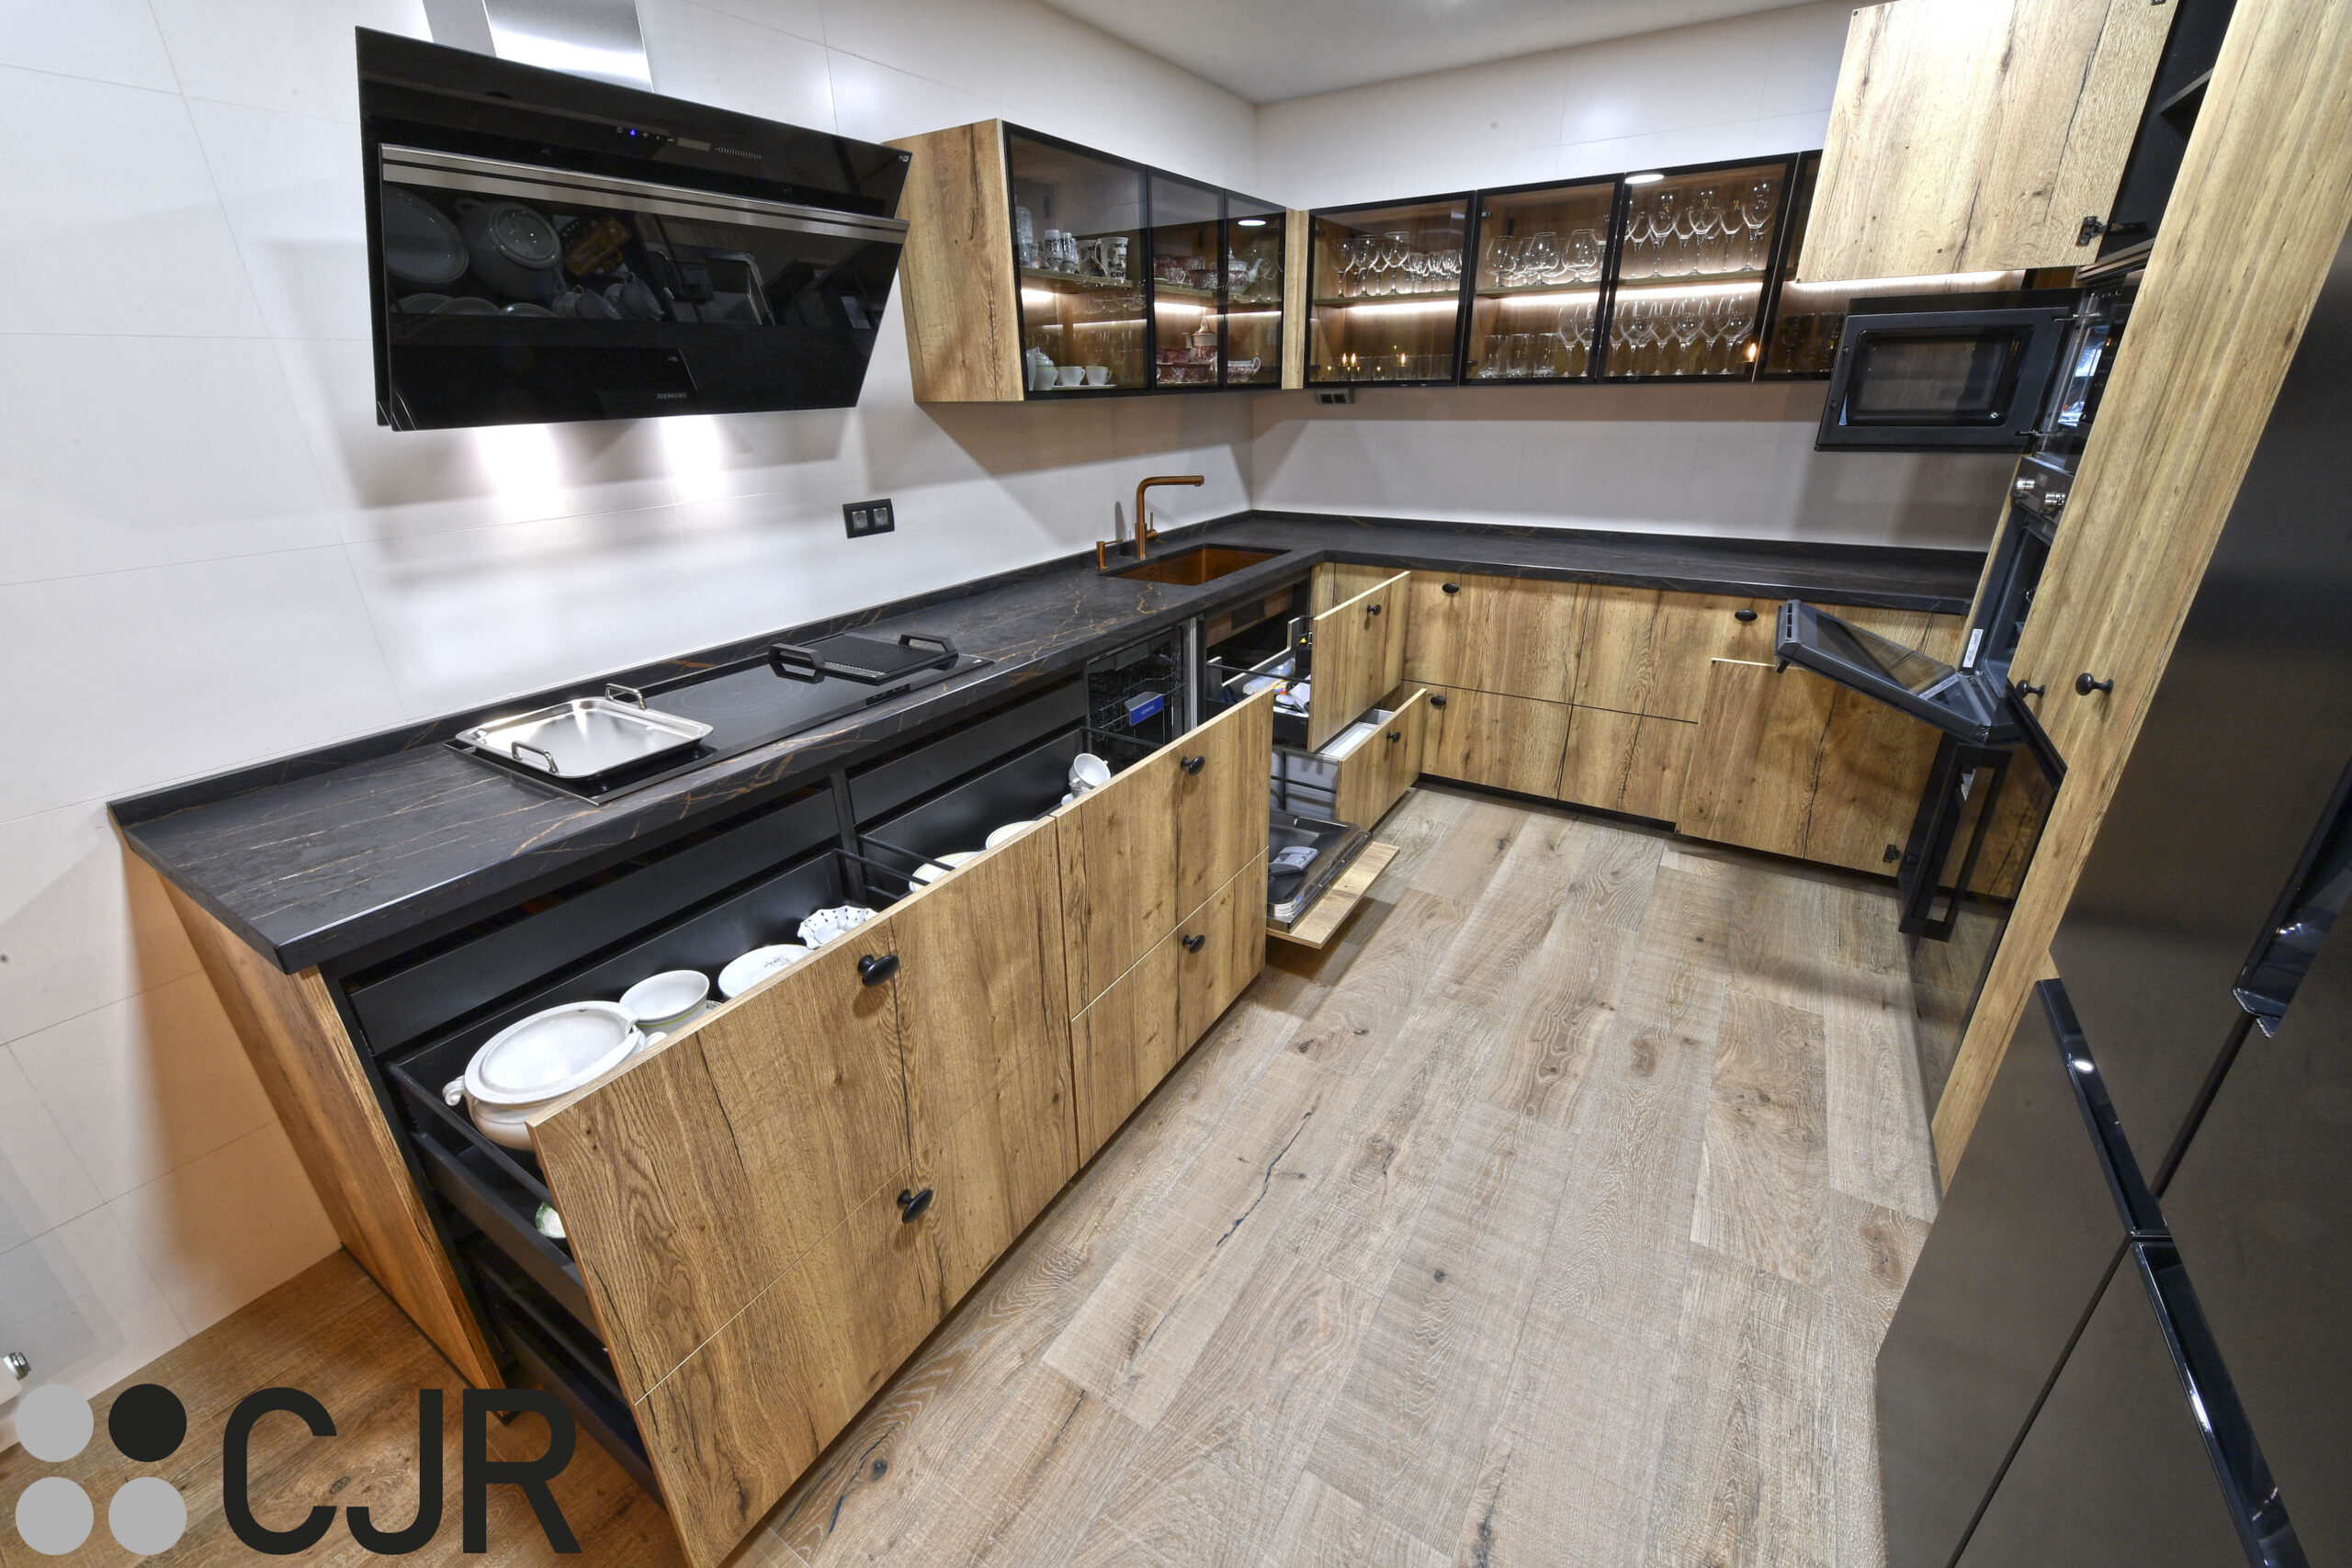 aprovechar almacenamiento de cocina abierta en negro y madera cocinas cjr